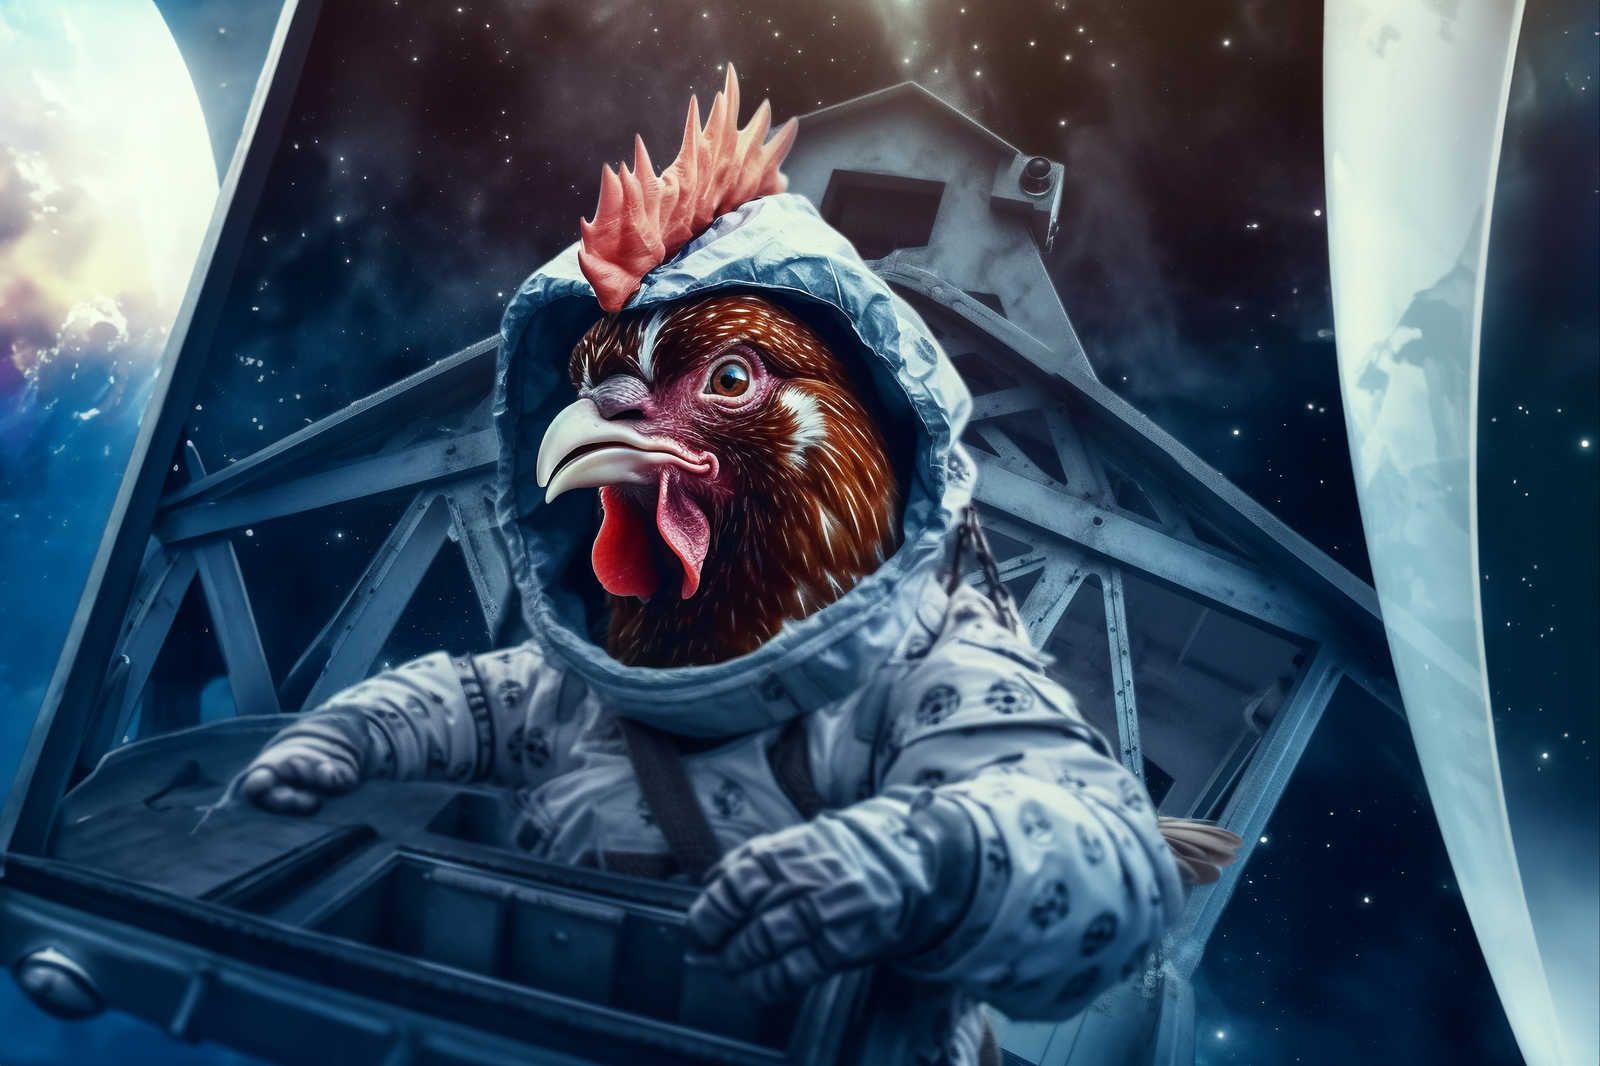             KI Pintura en lienzo »Space Chicken« - 90 cm x 60 cm
        